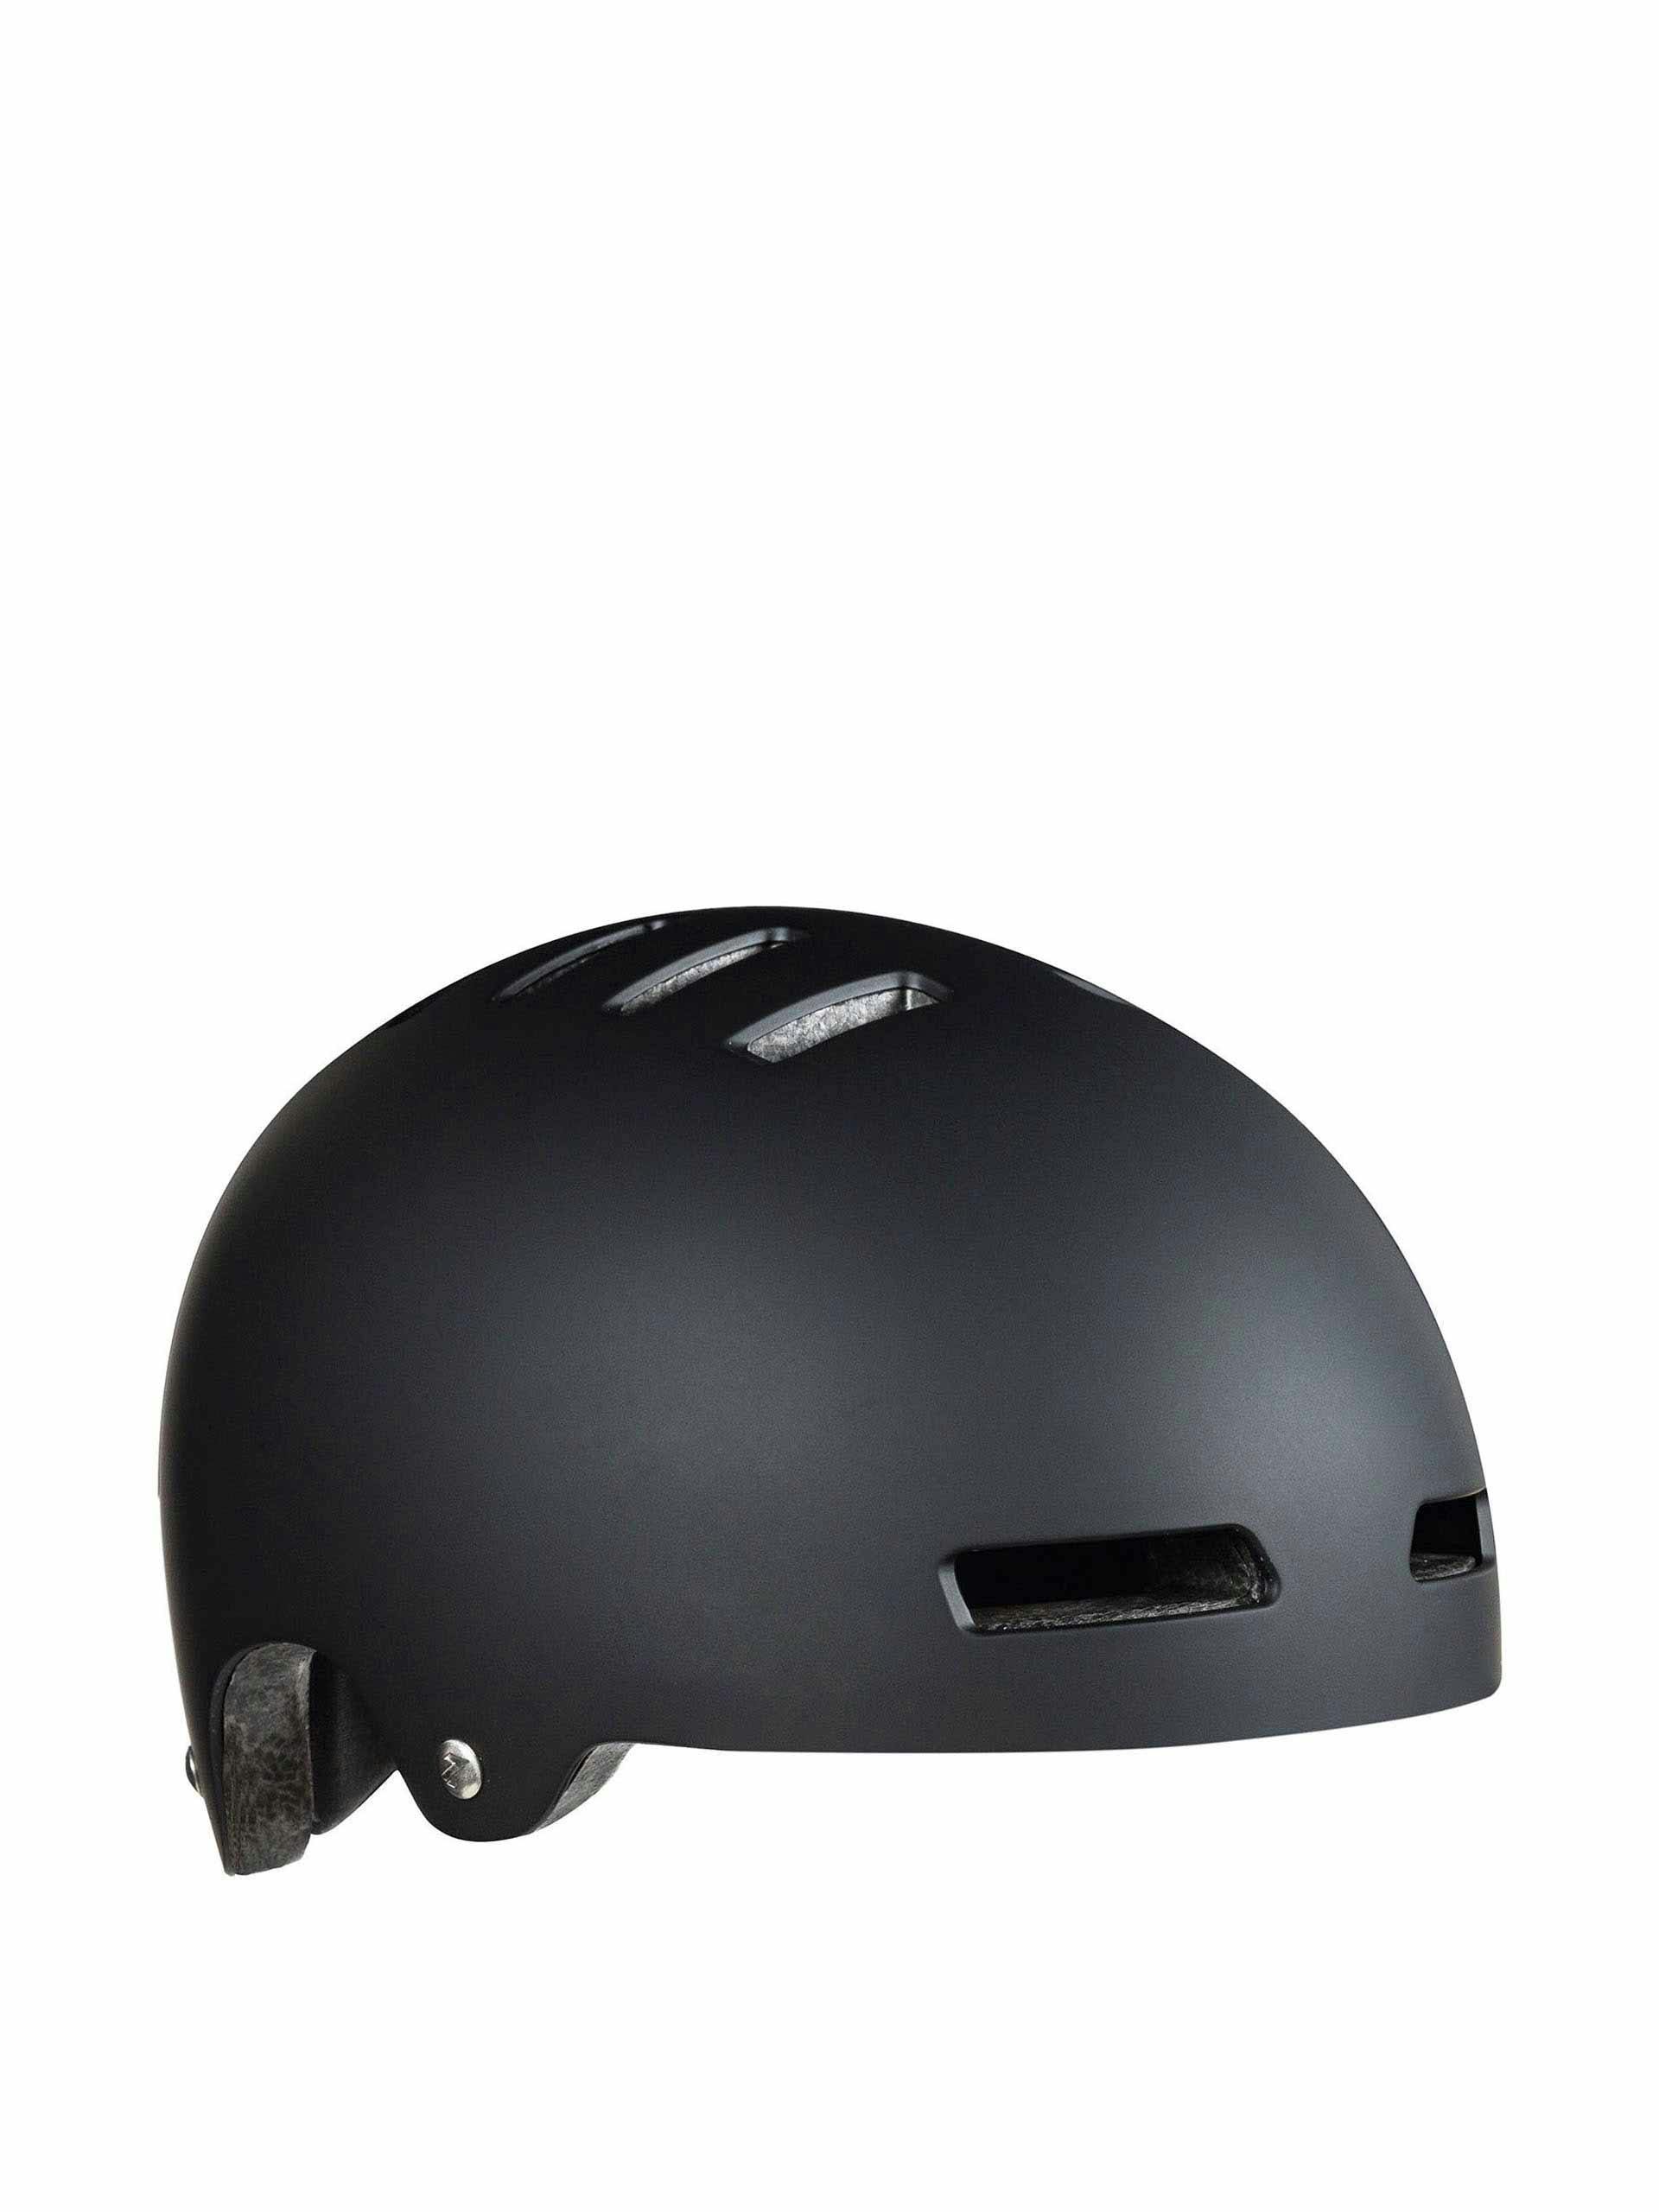 Lazer One+ bike helmet